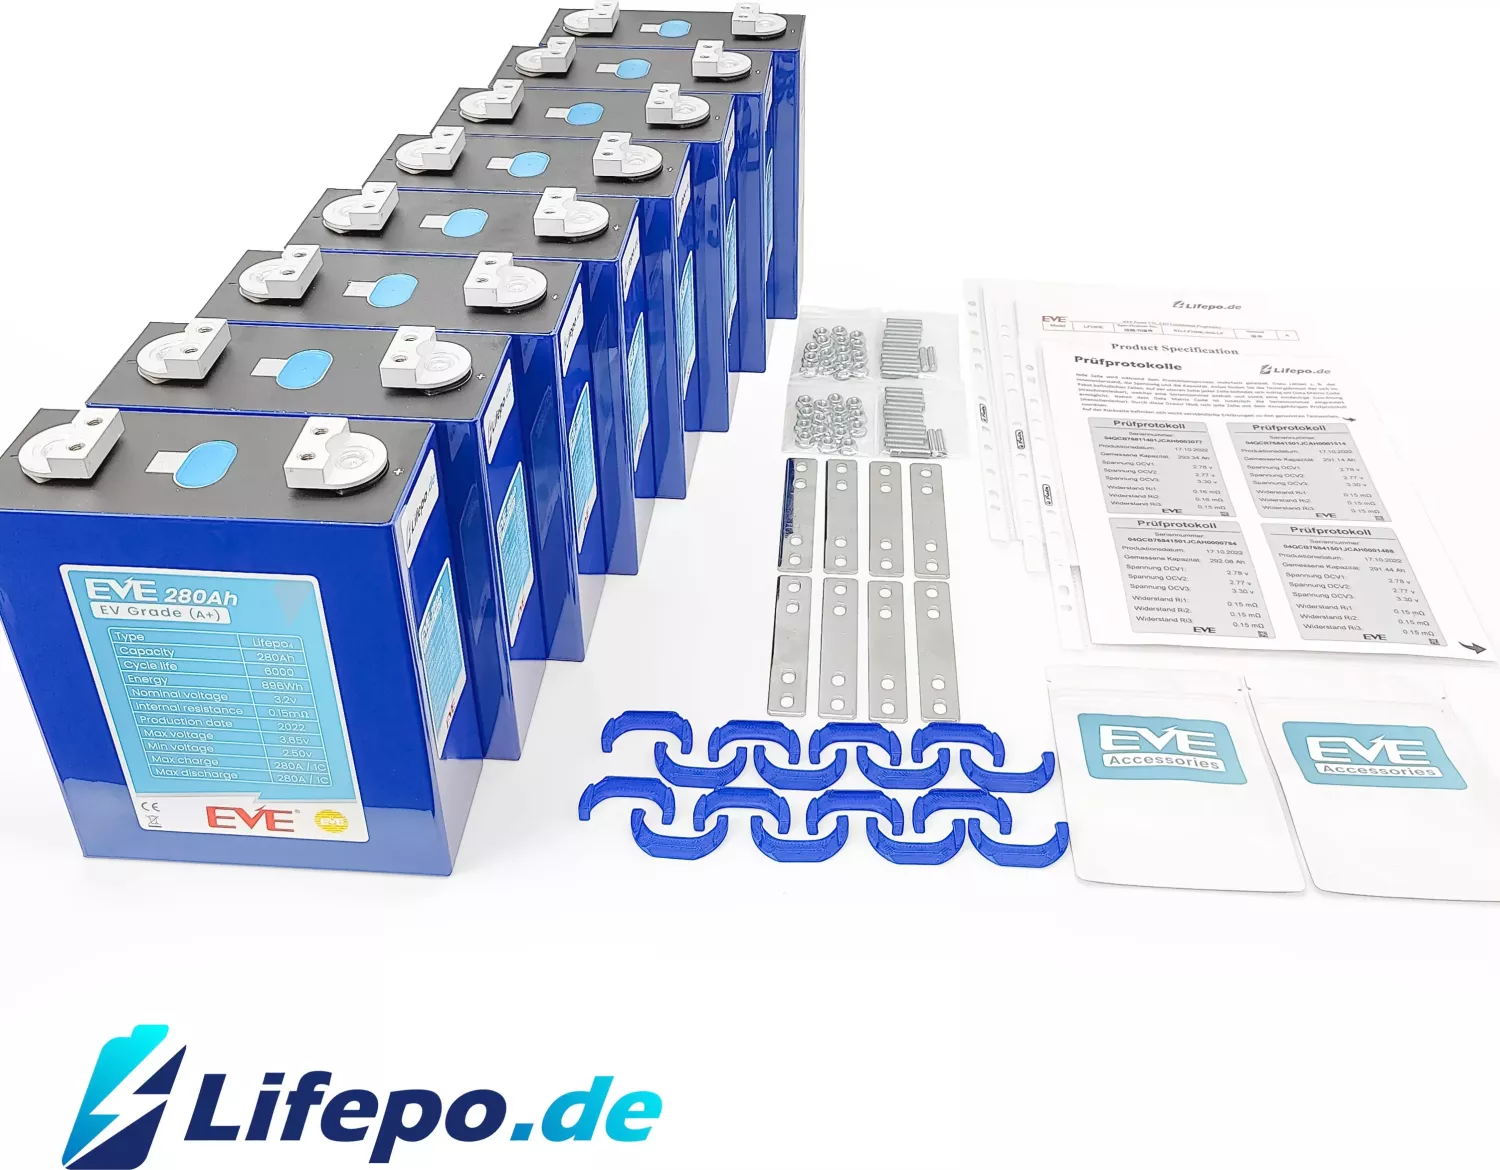 Lifepo.de Lifepo4 EVE 3.2V 280Ah Zelle ab € 1183,52 (2024